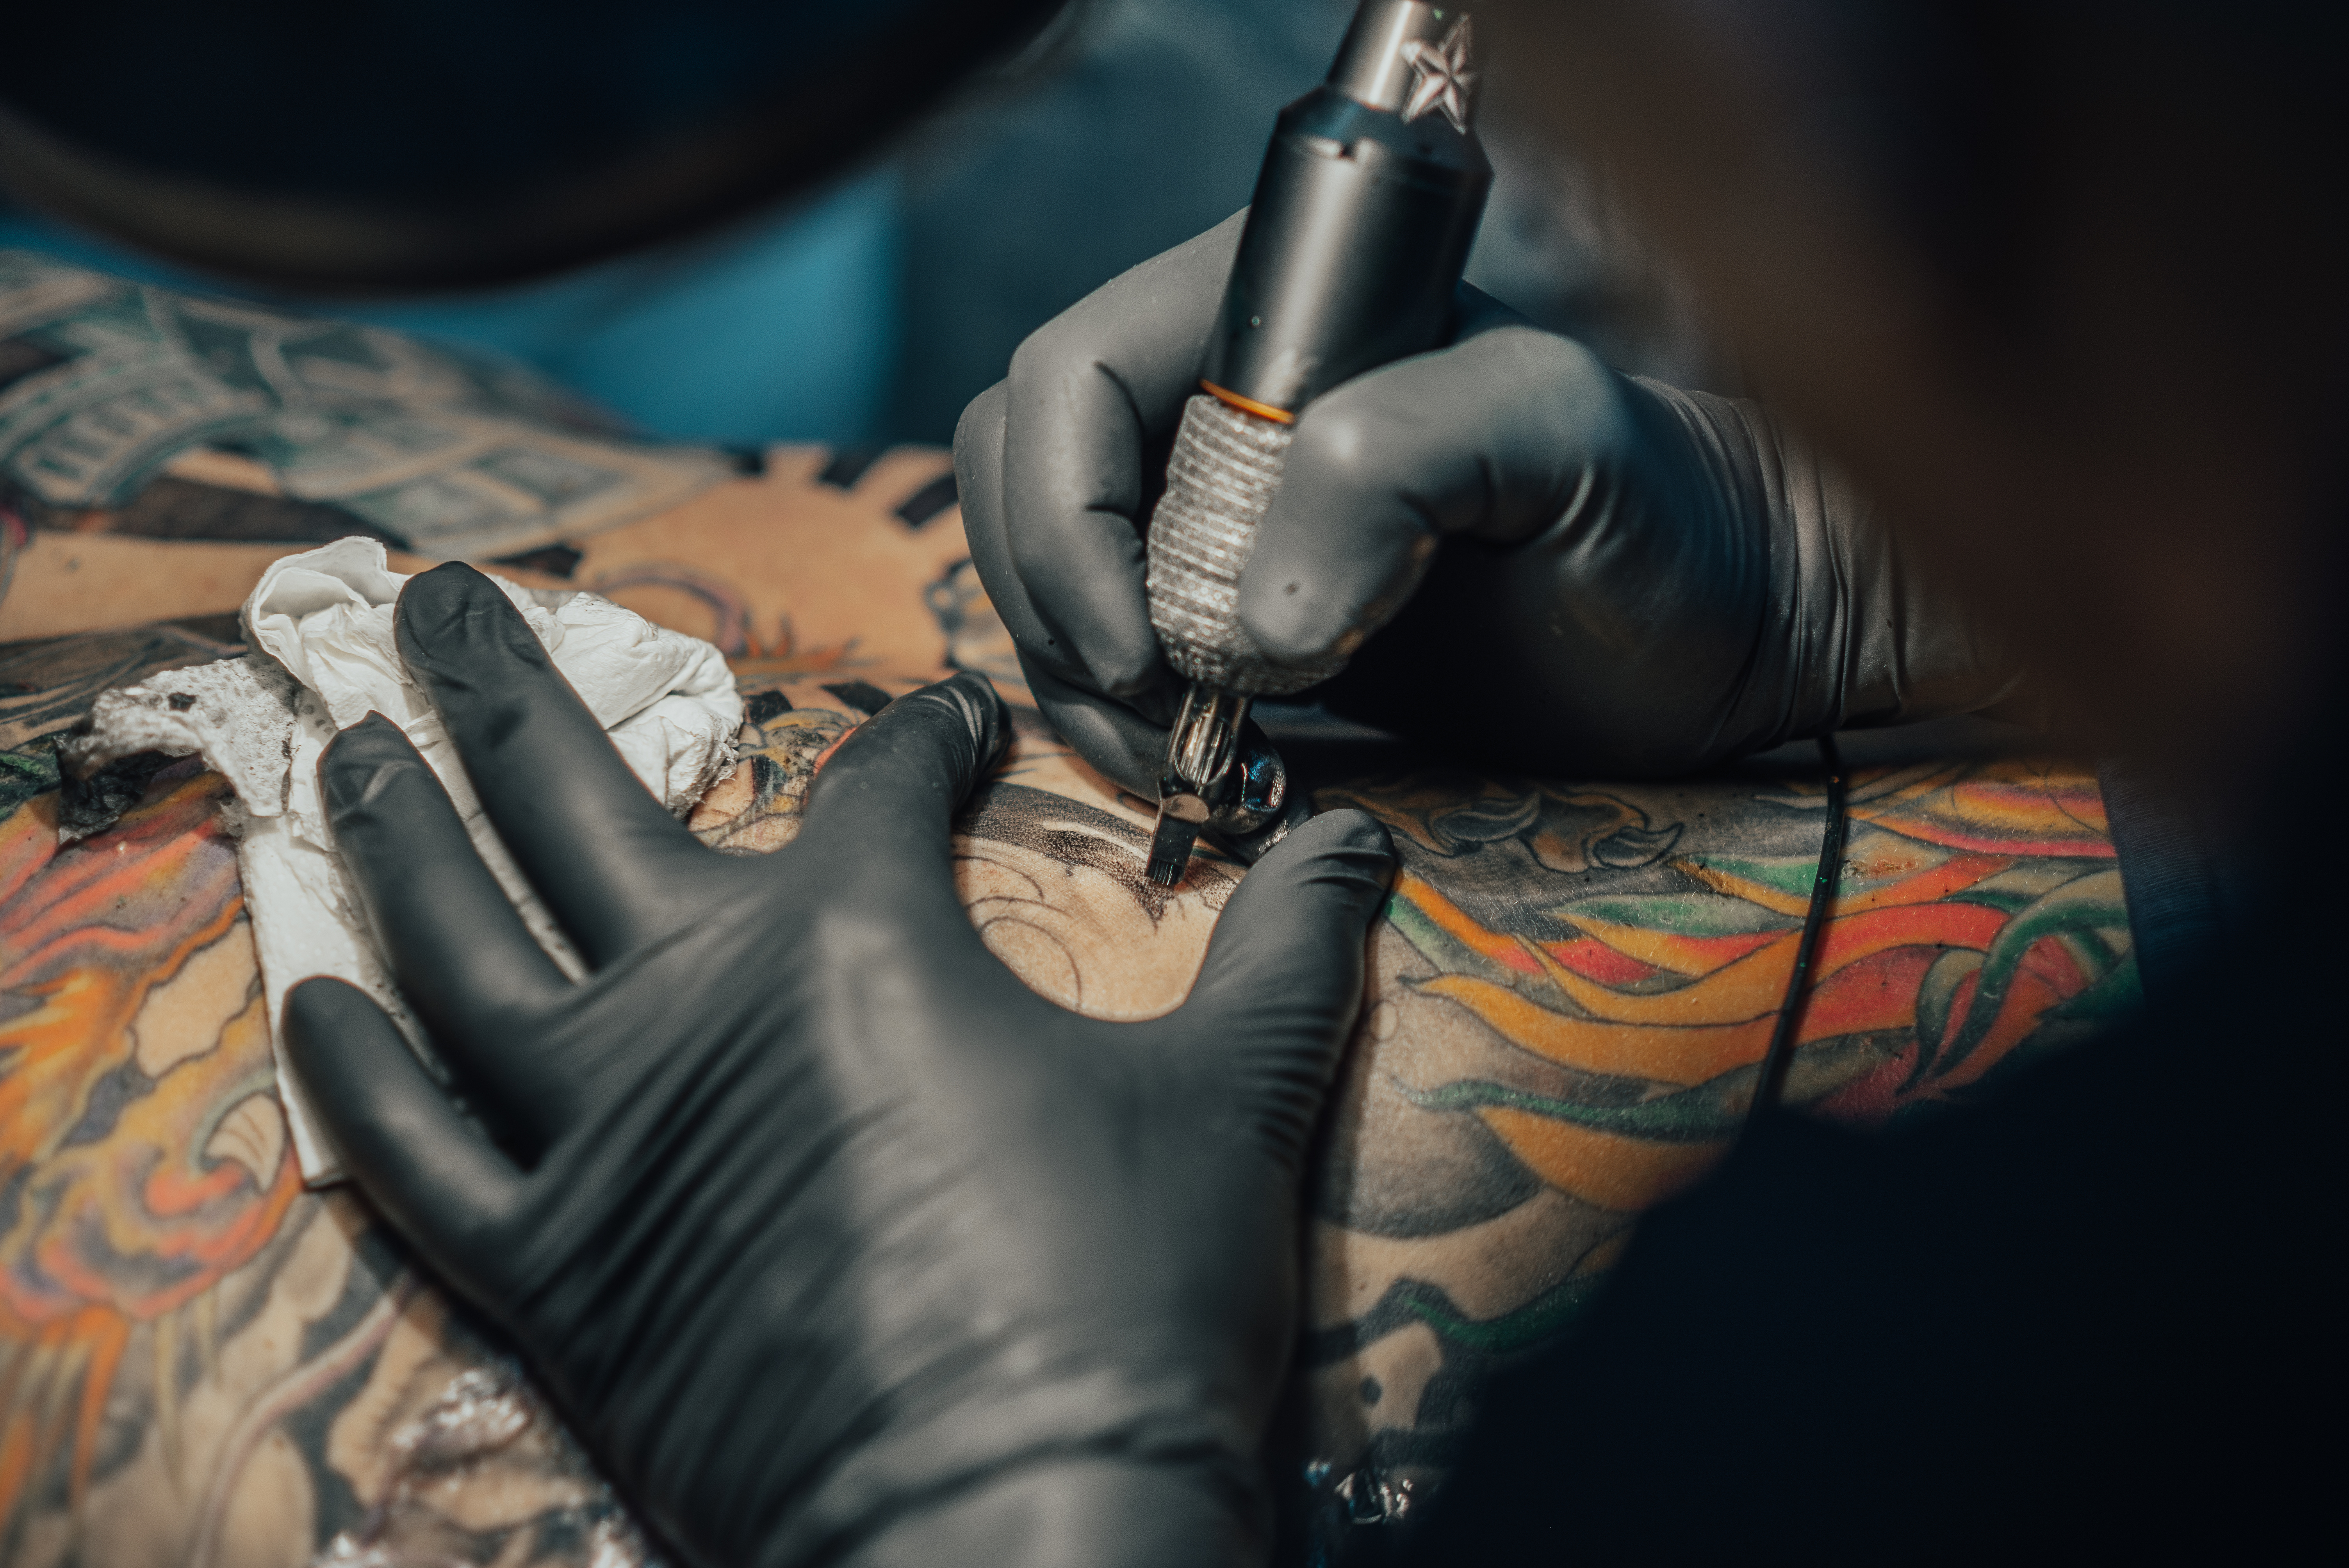 tattoo parlour huddersfield